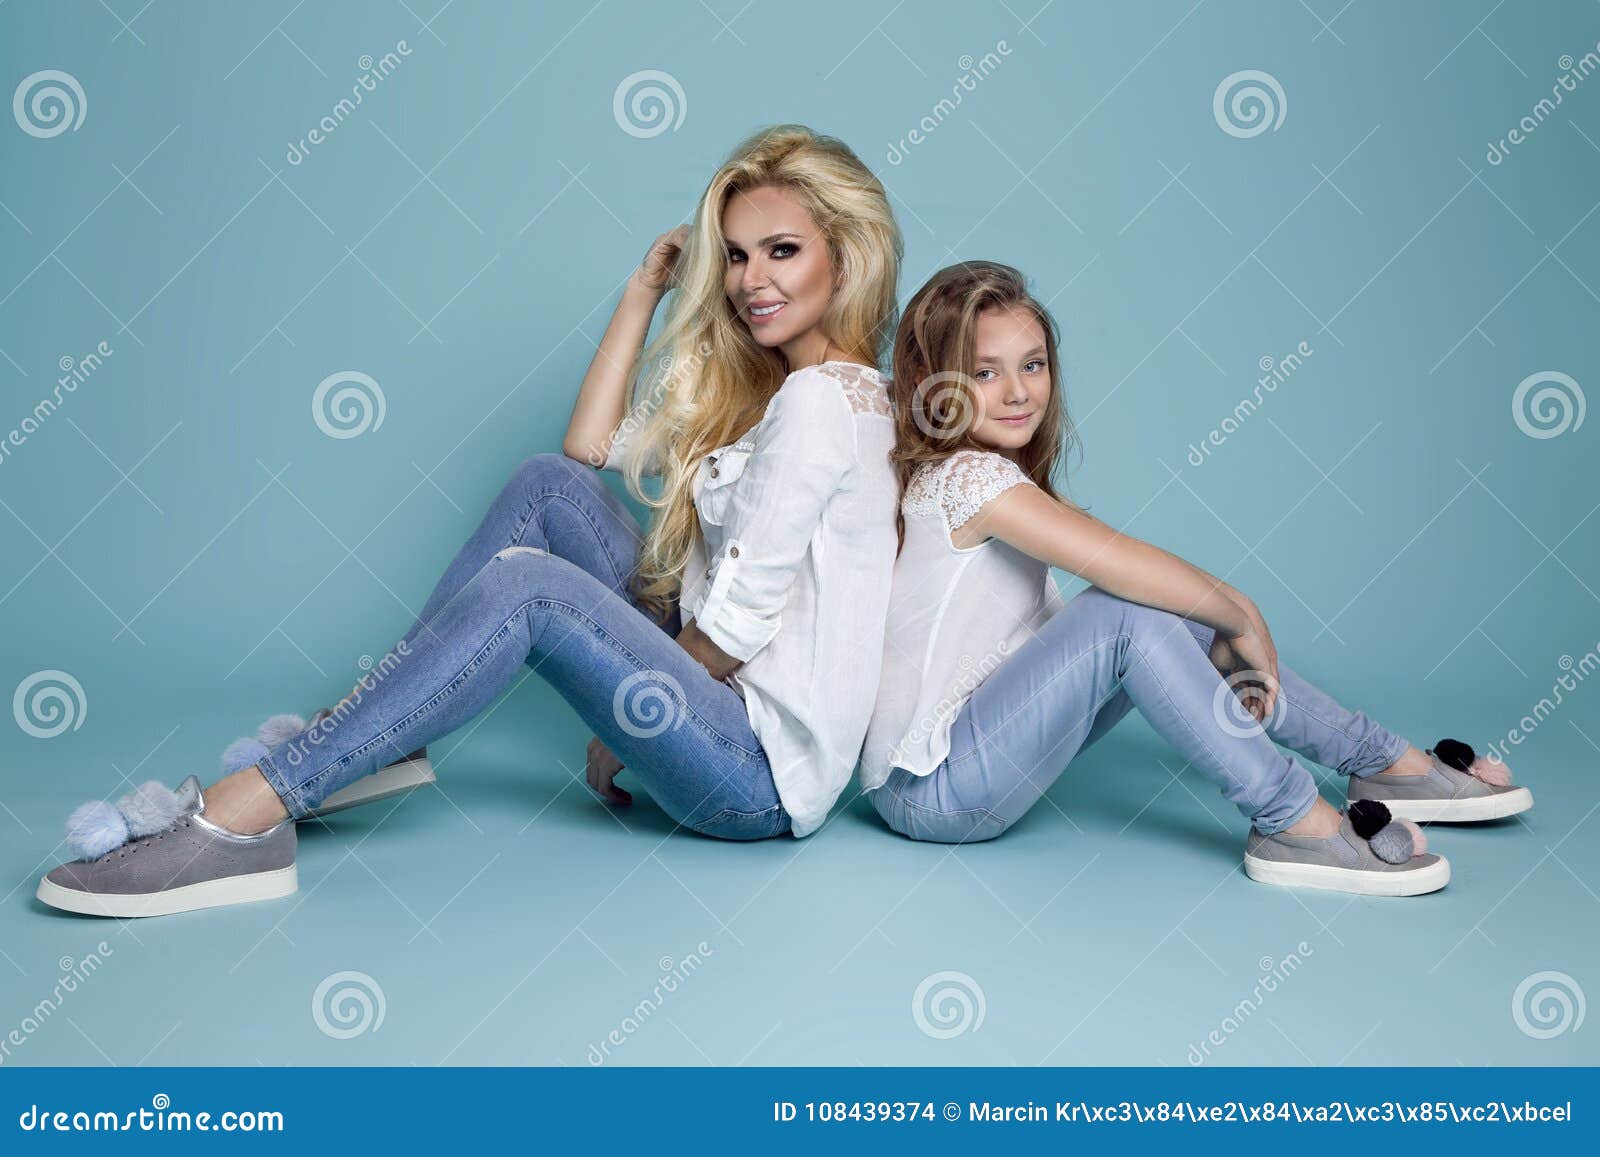 Blonde daughter. Фотосессия мама и дочка в джинсах. Фотосессия мама дочь в джинсах. Фотосессия с дочкой в джинсах. Фотосессия мама и дочка в студии в джинсах.